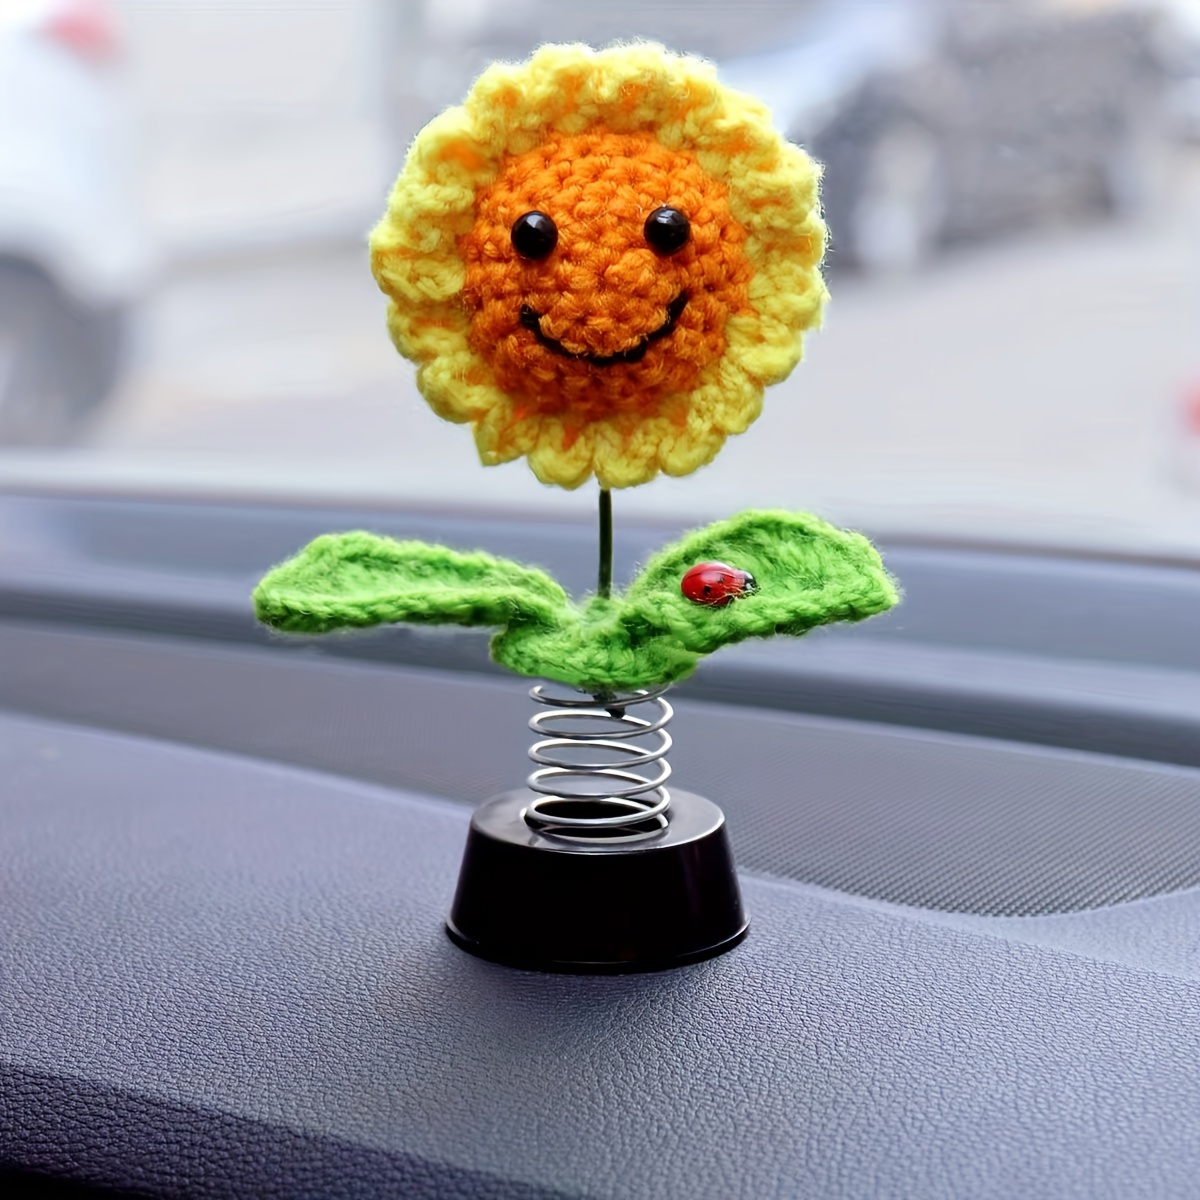 1 Stück Handgemachte Gestrickte Sonnenblume Autozubehör